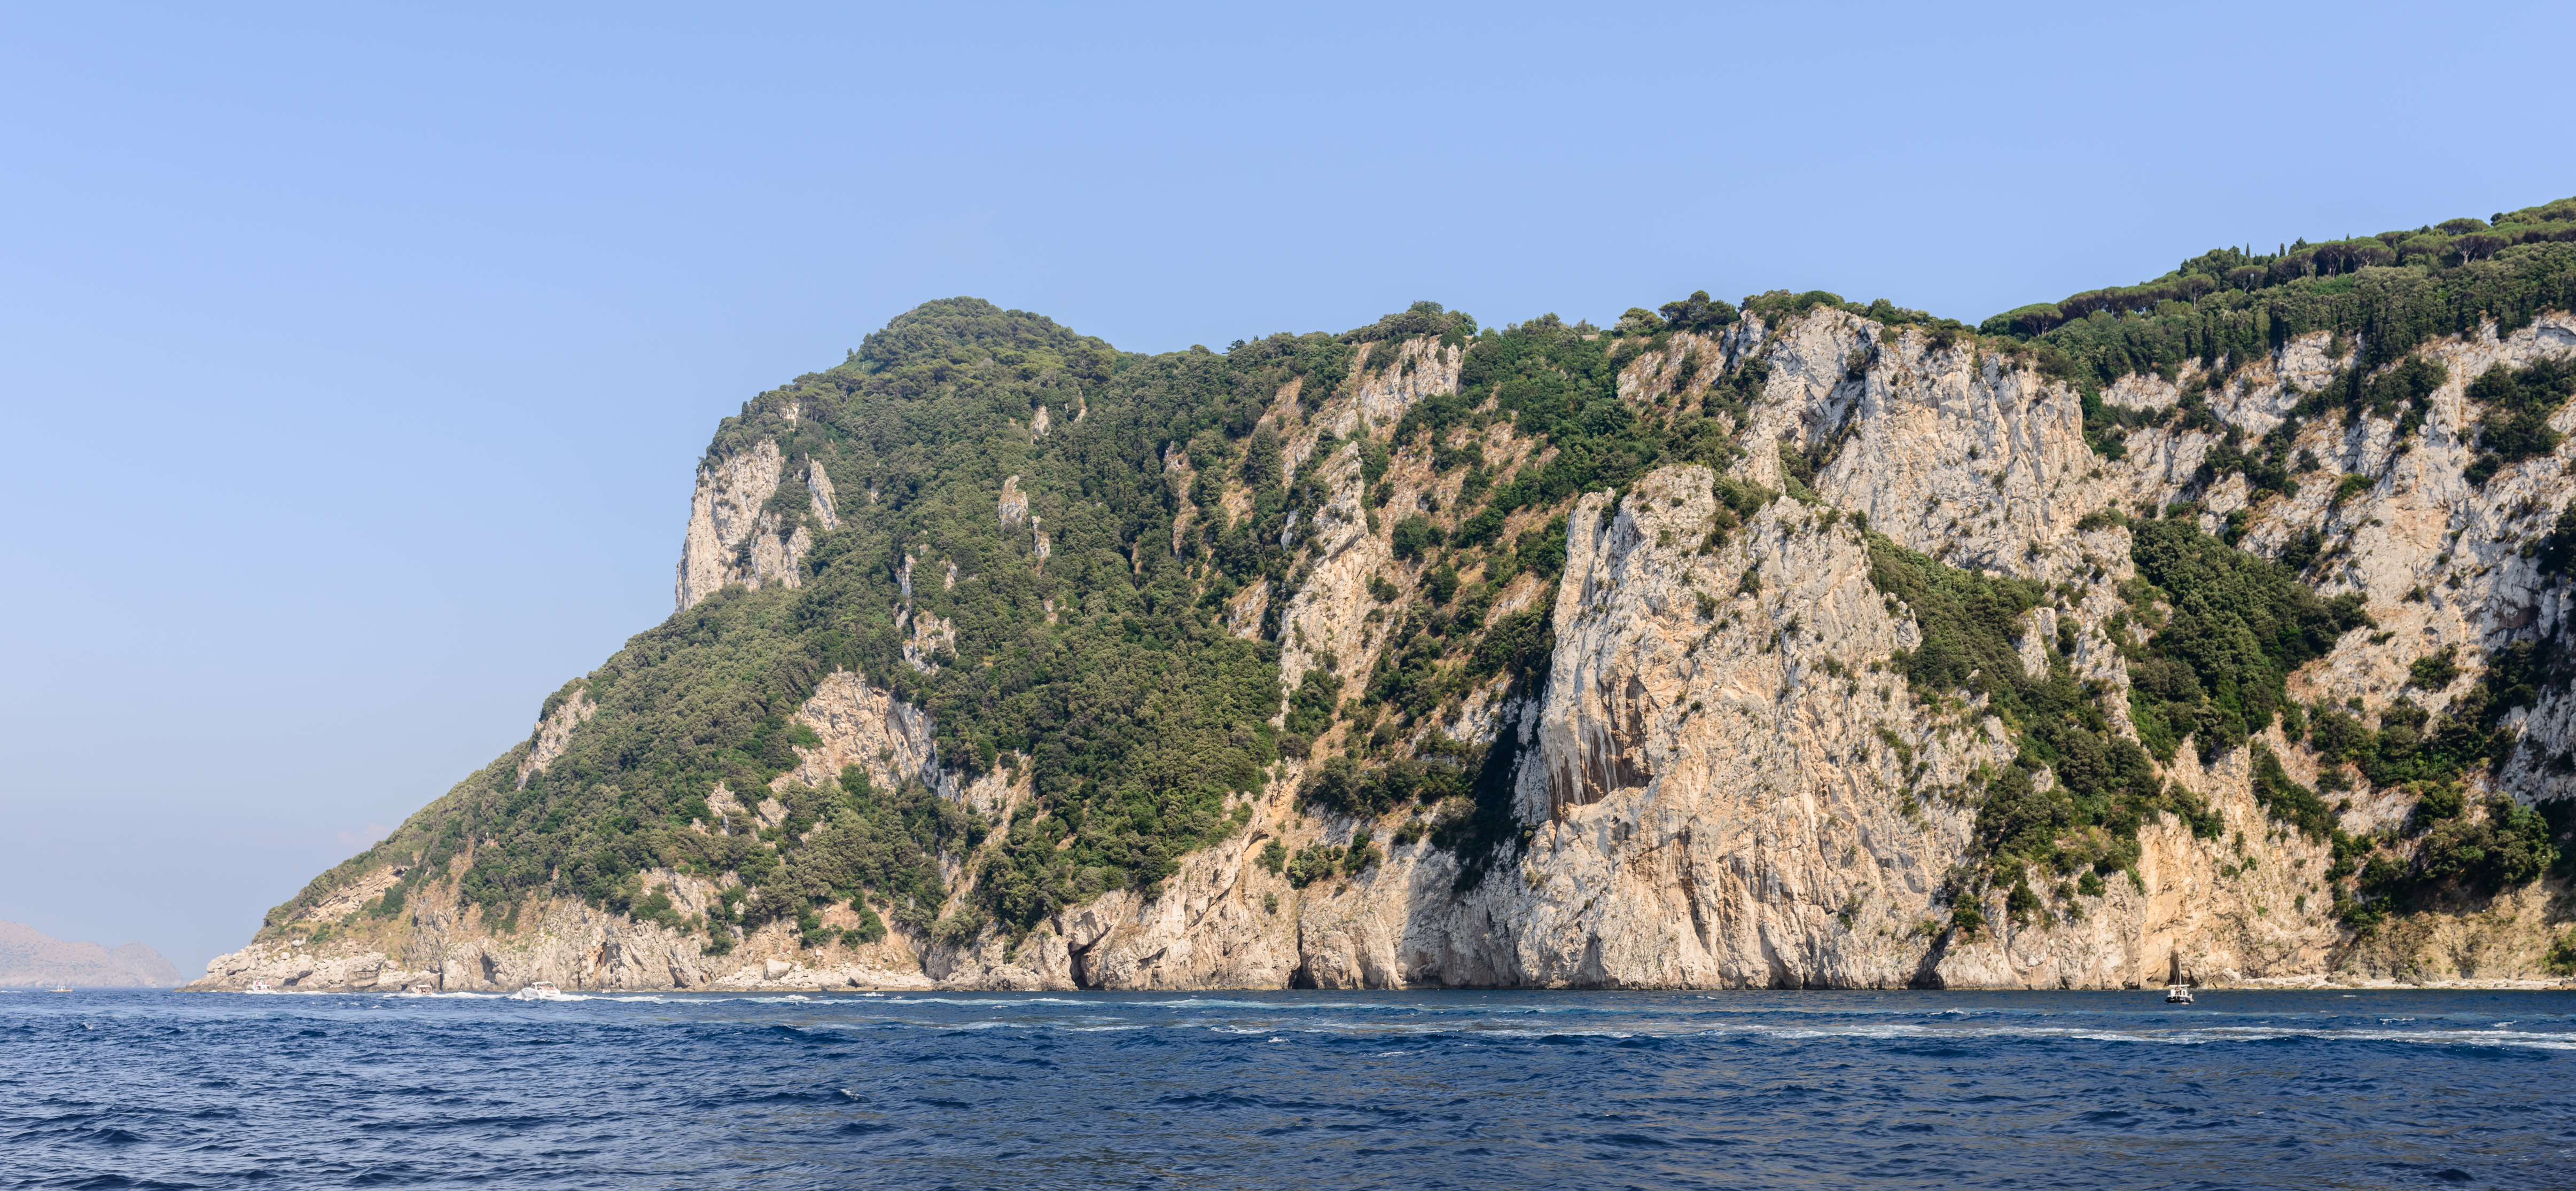 Capri island - Campania - Italy - July 12th 2013 - 22